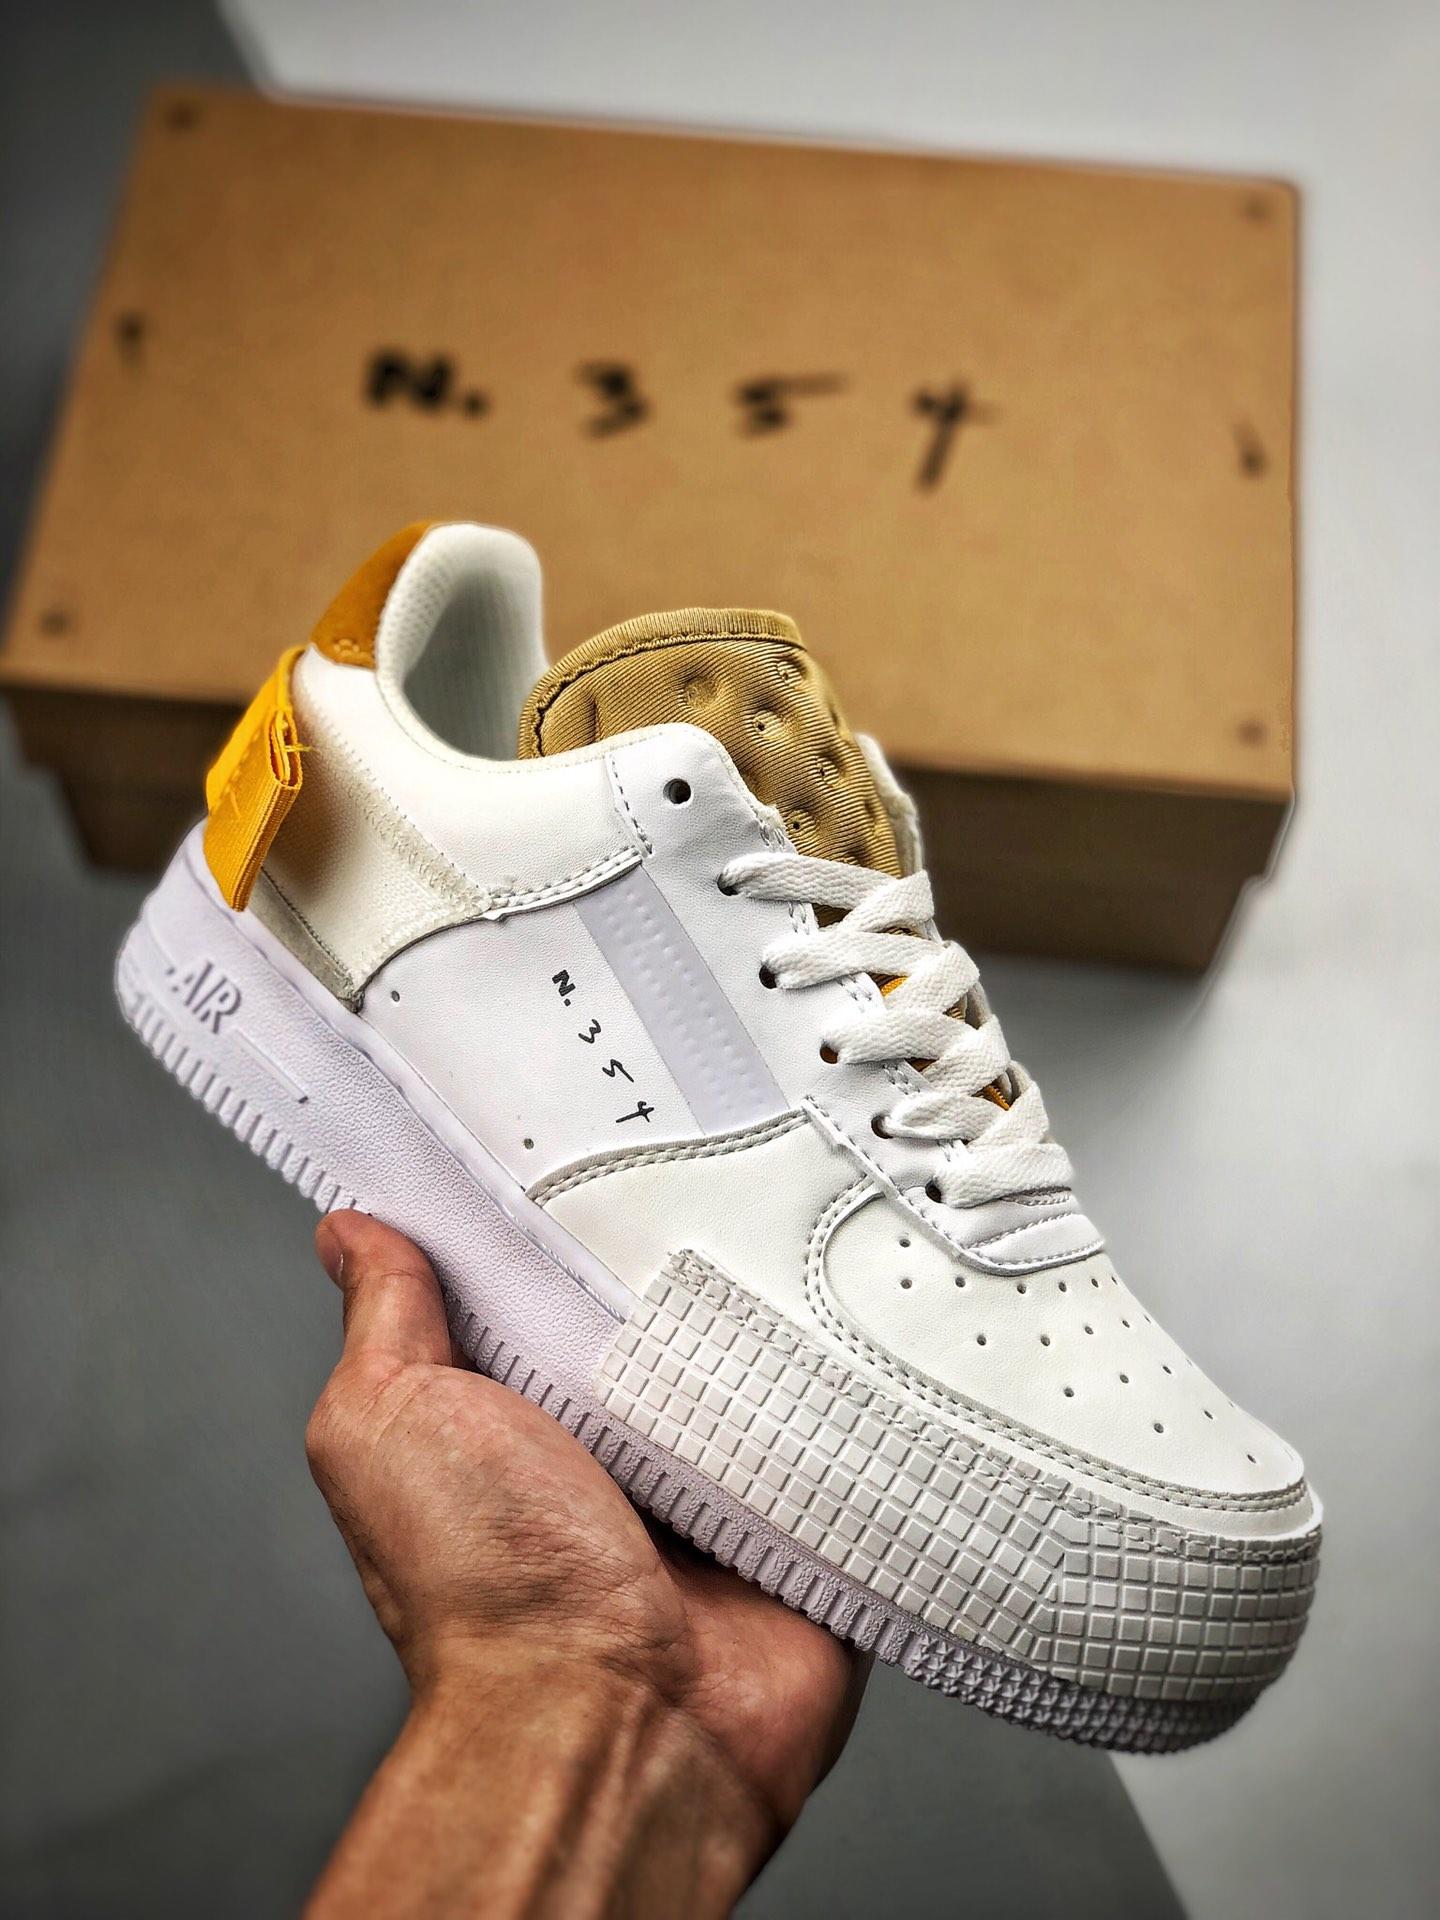 Nieuwjaar Londen Besluit Nike N354 Air Force 1 Type White Gold Yellow For Sale – Sneaker Hello